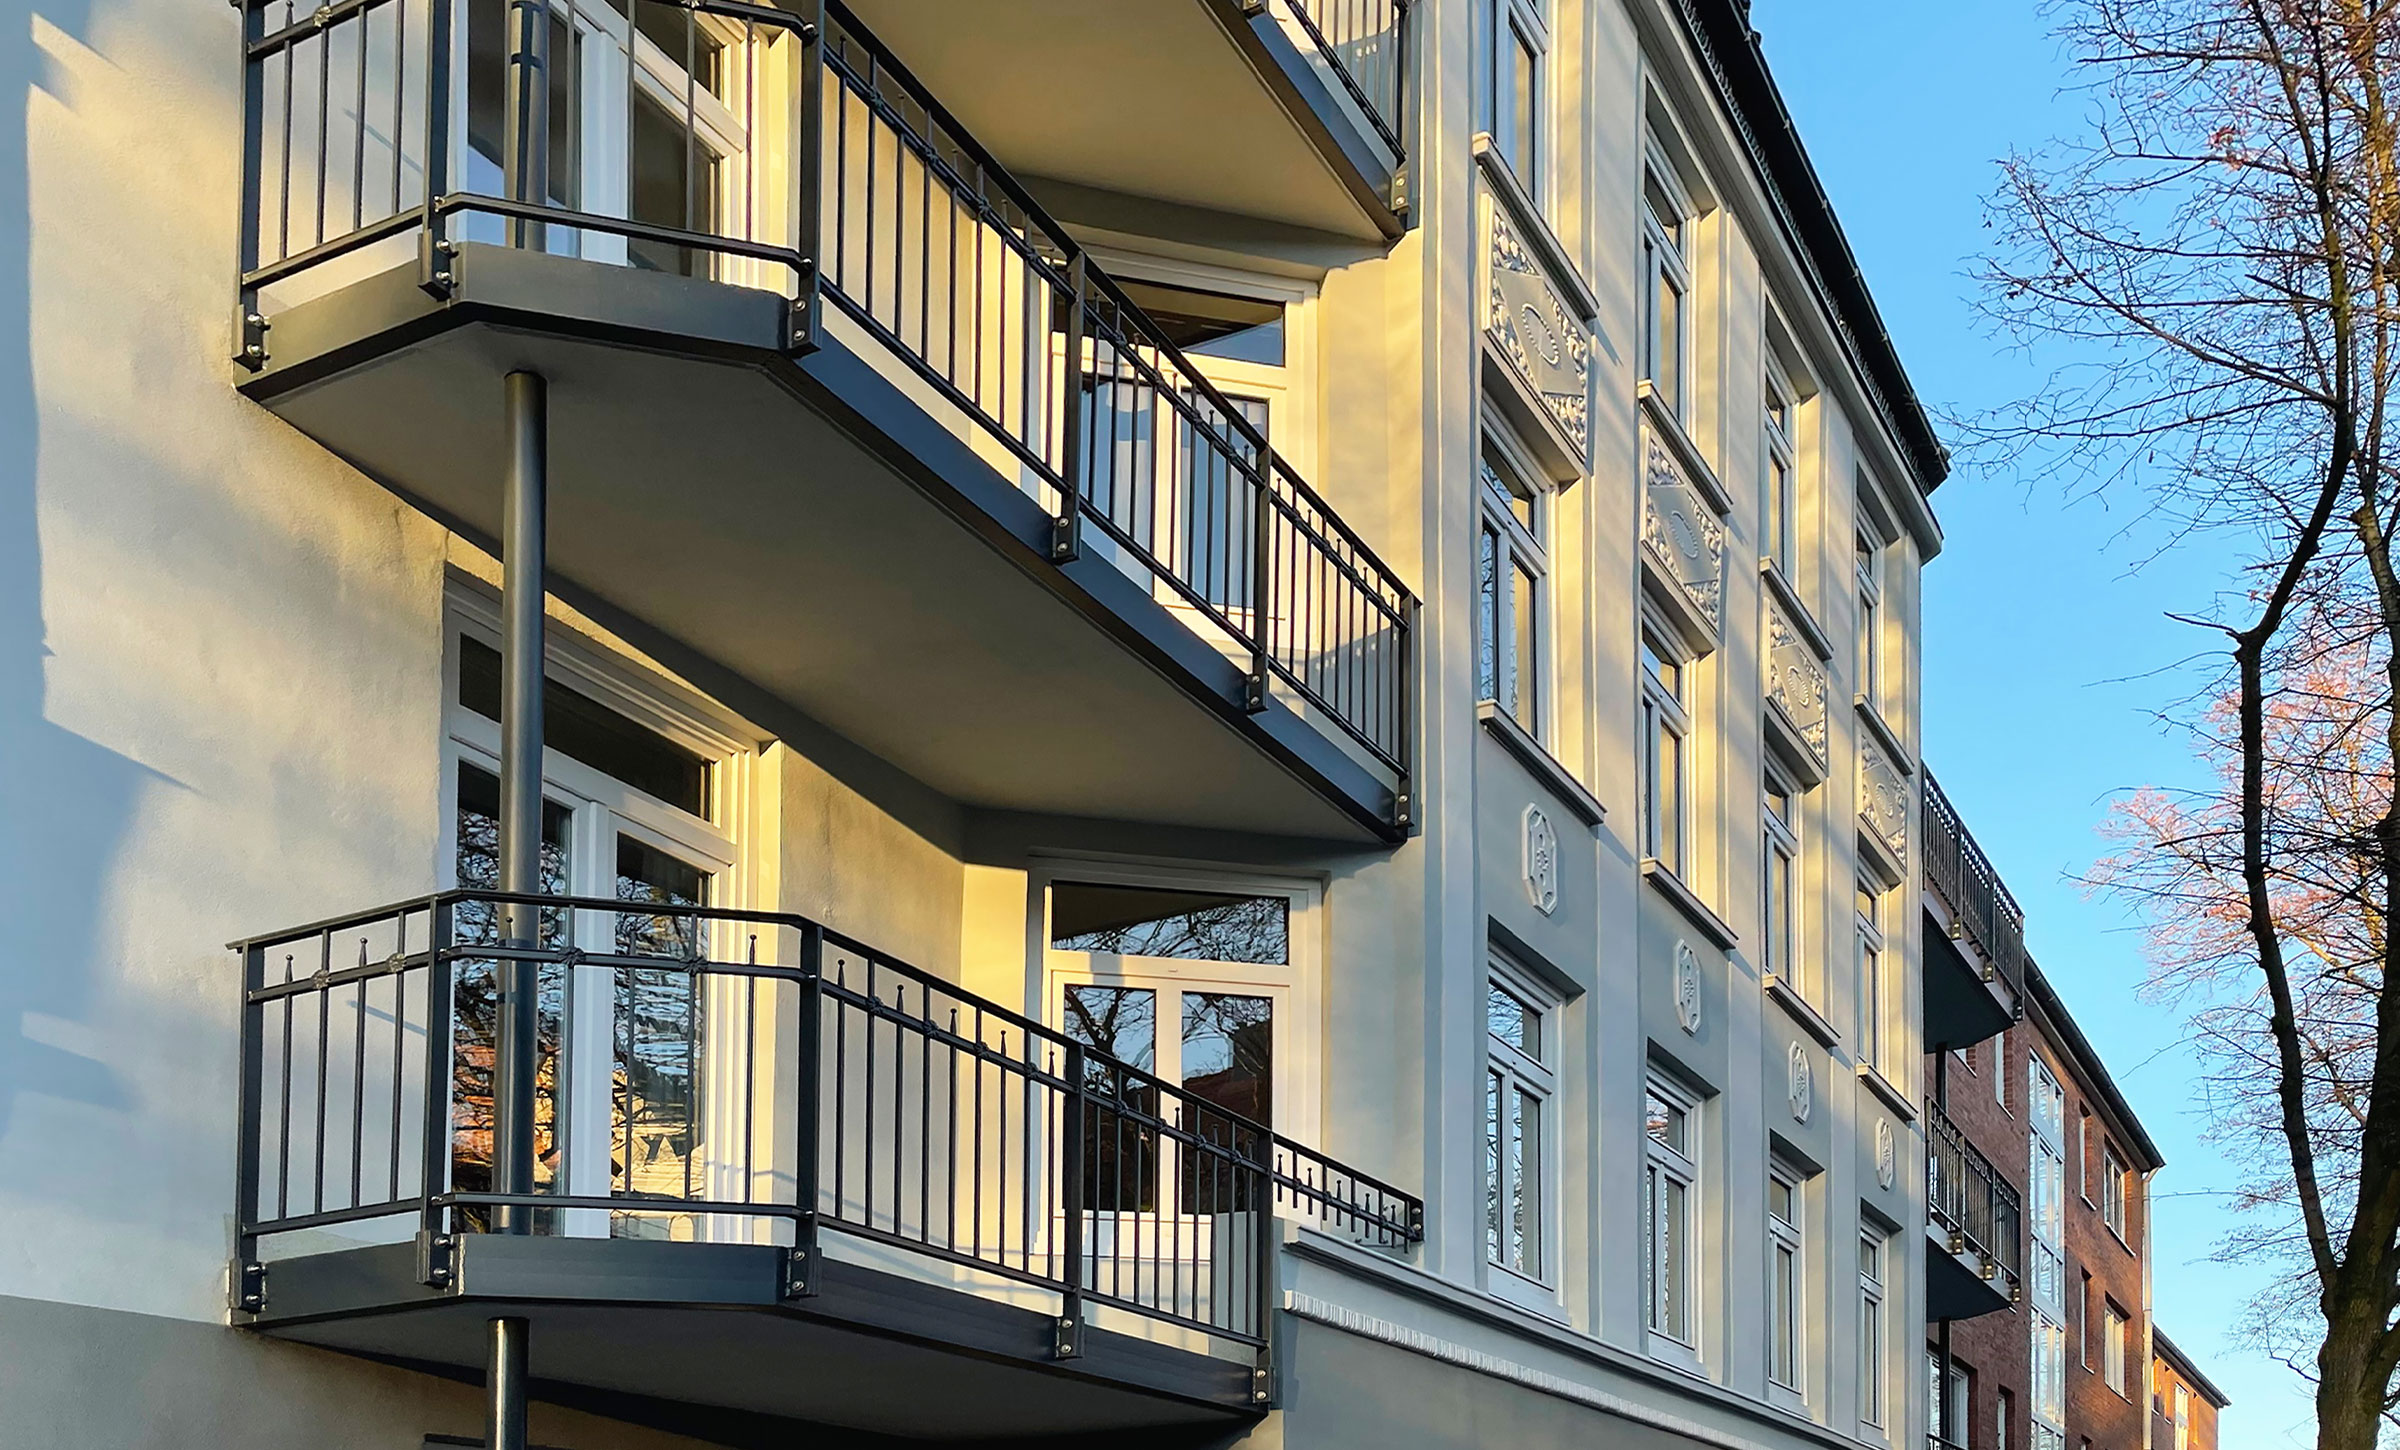 Außenansicht Mehrfamilien-Stadthaus in Hamburg mit Balkonen